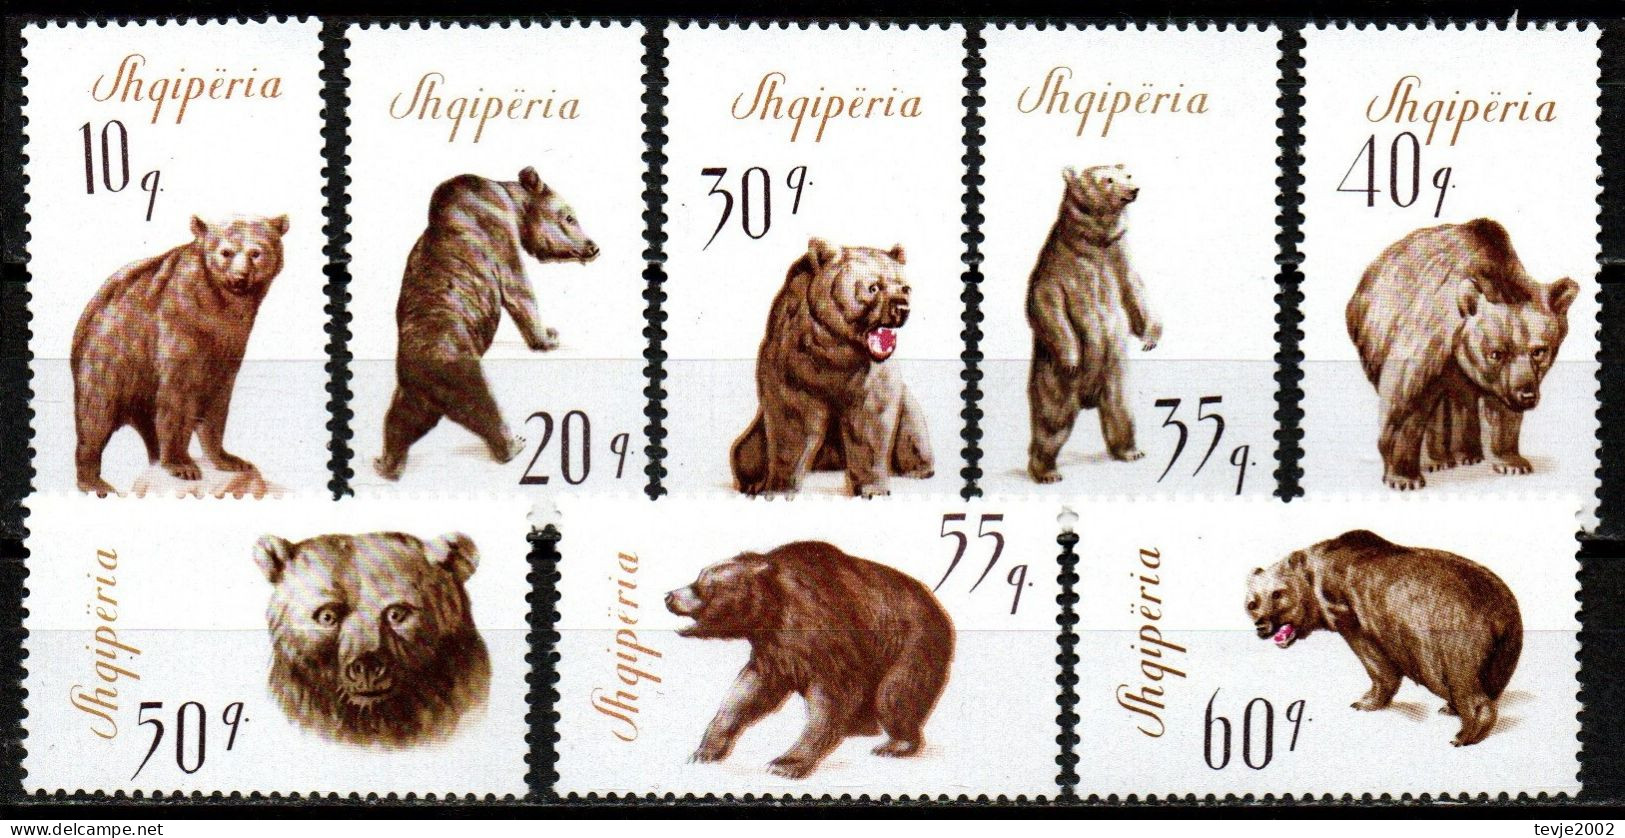 Albanien 1965 - Mi.Nr. 1010 - 1017 - Postfrisch MNH - Tiere Animals Bären Bears - Orsi